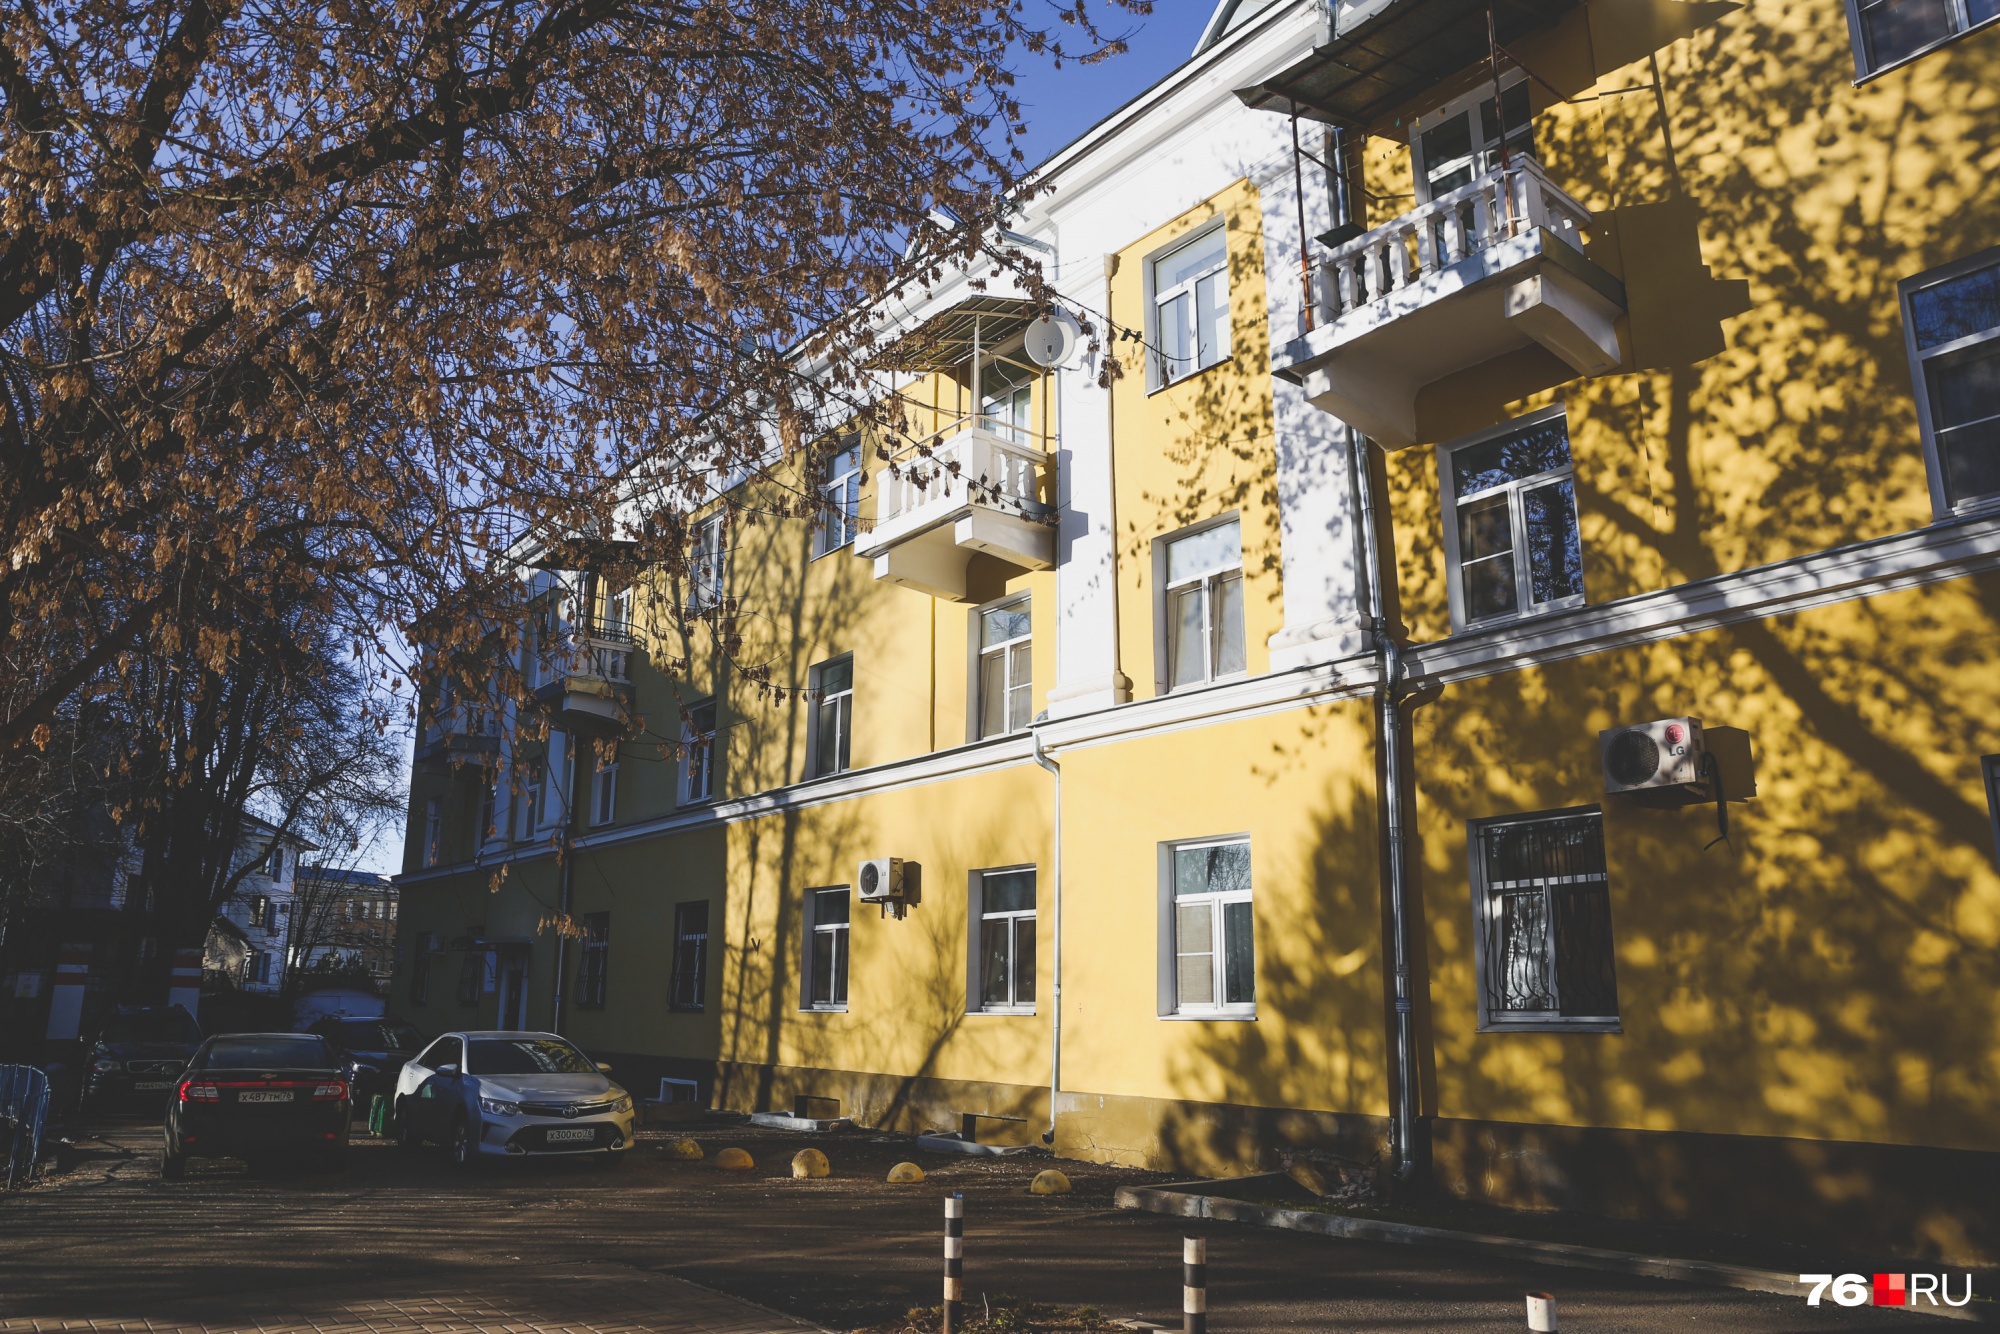 Этот ярко-желтый жилой дом находится неподалеку от предыдущего, он тоже стоит на улице Максимова